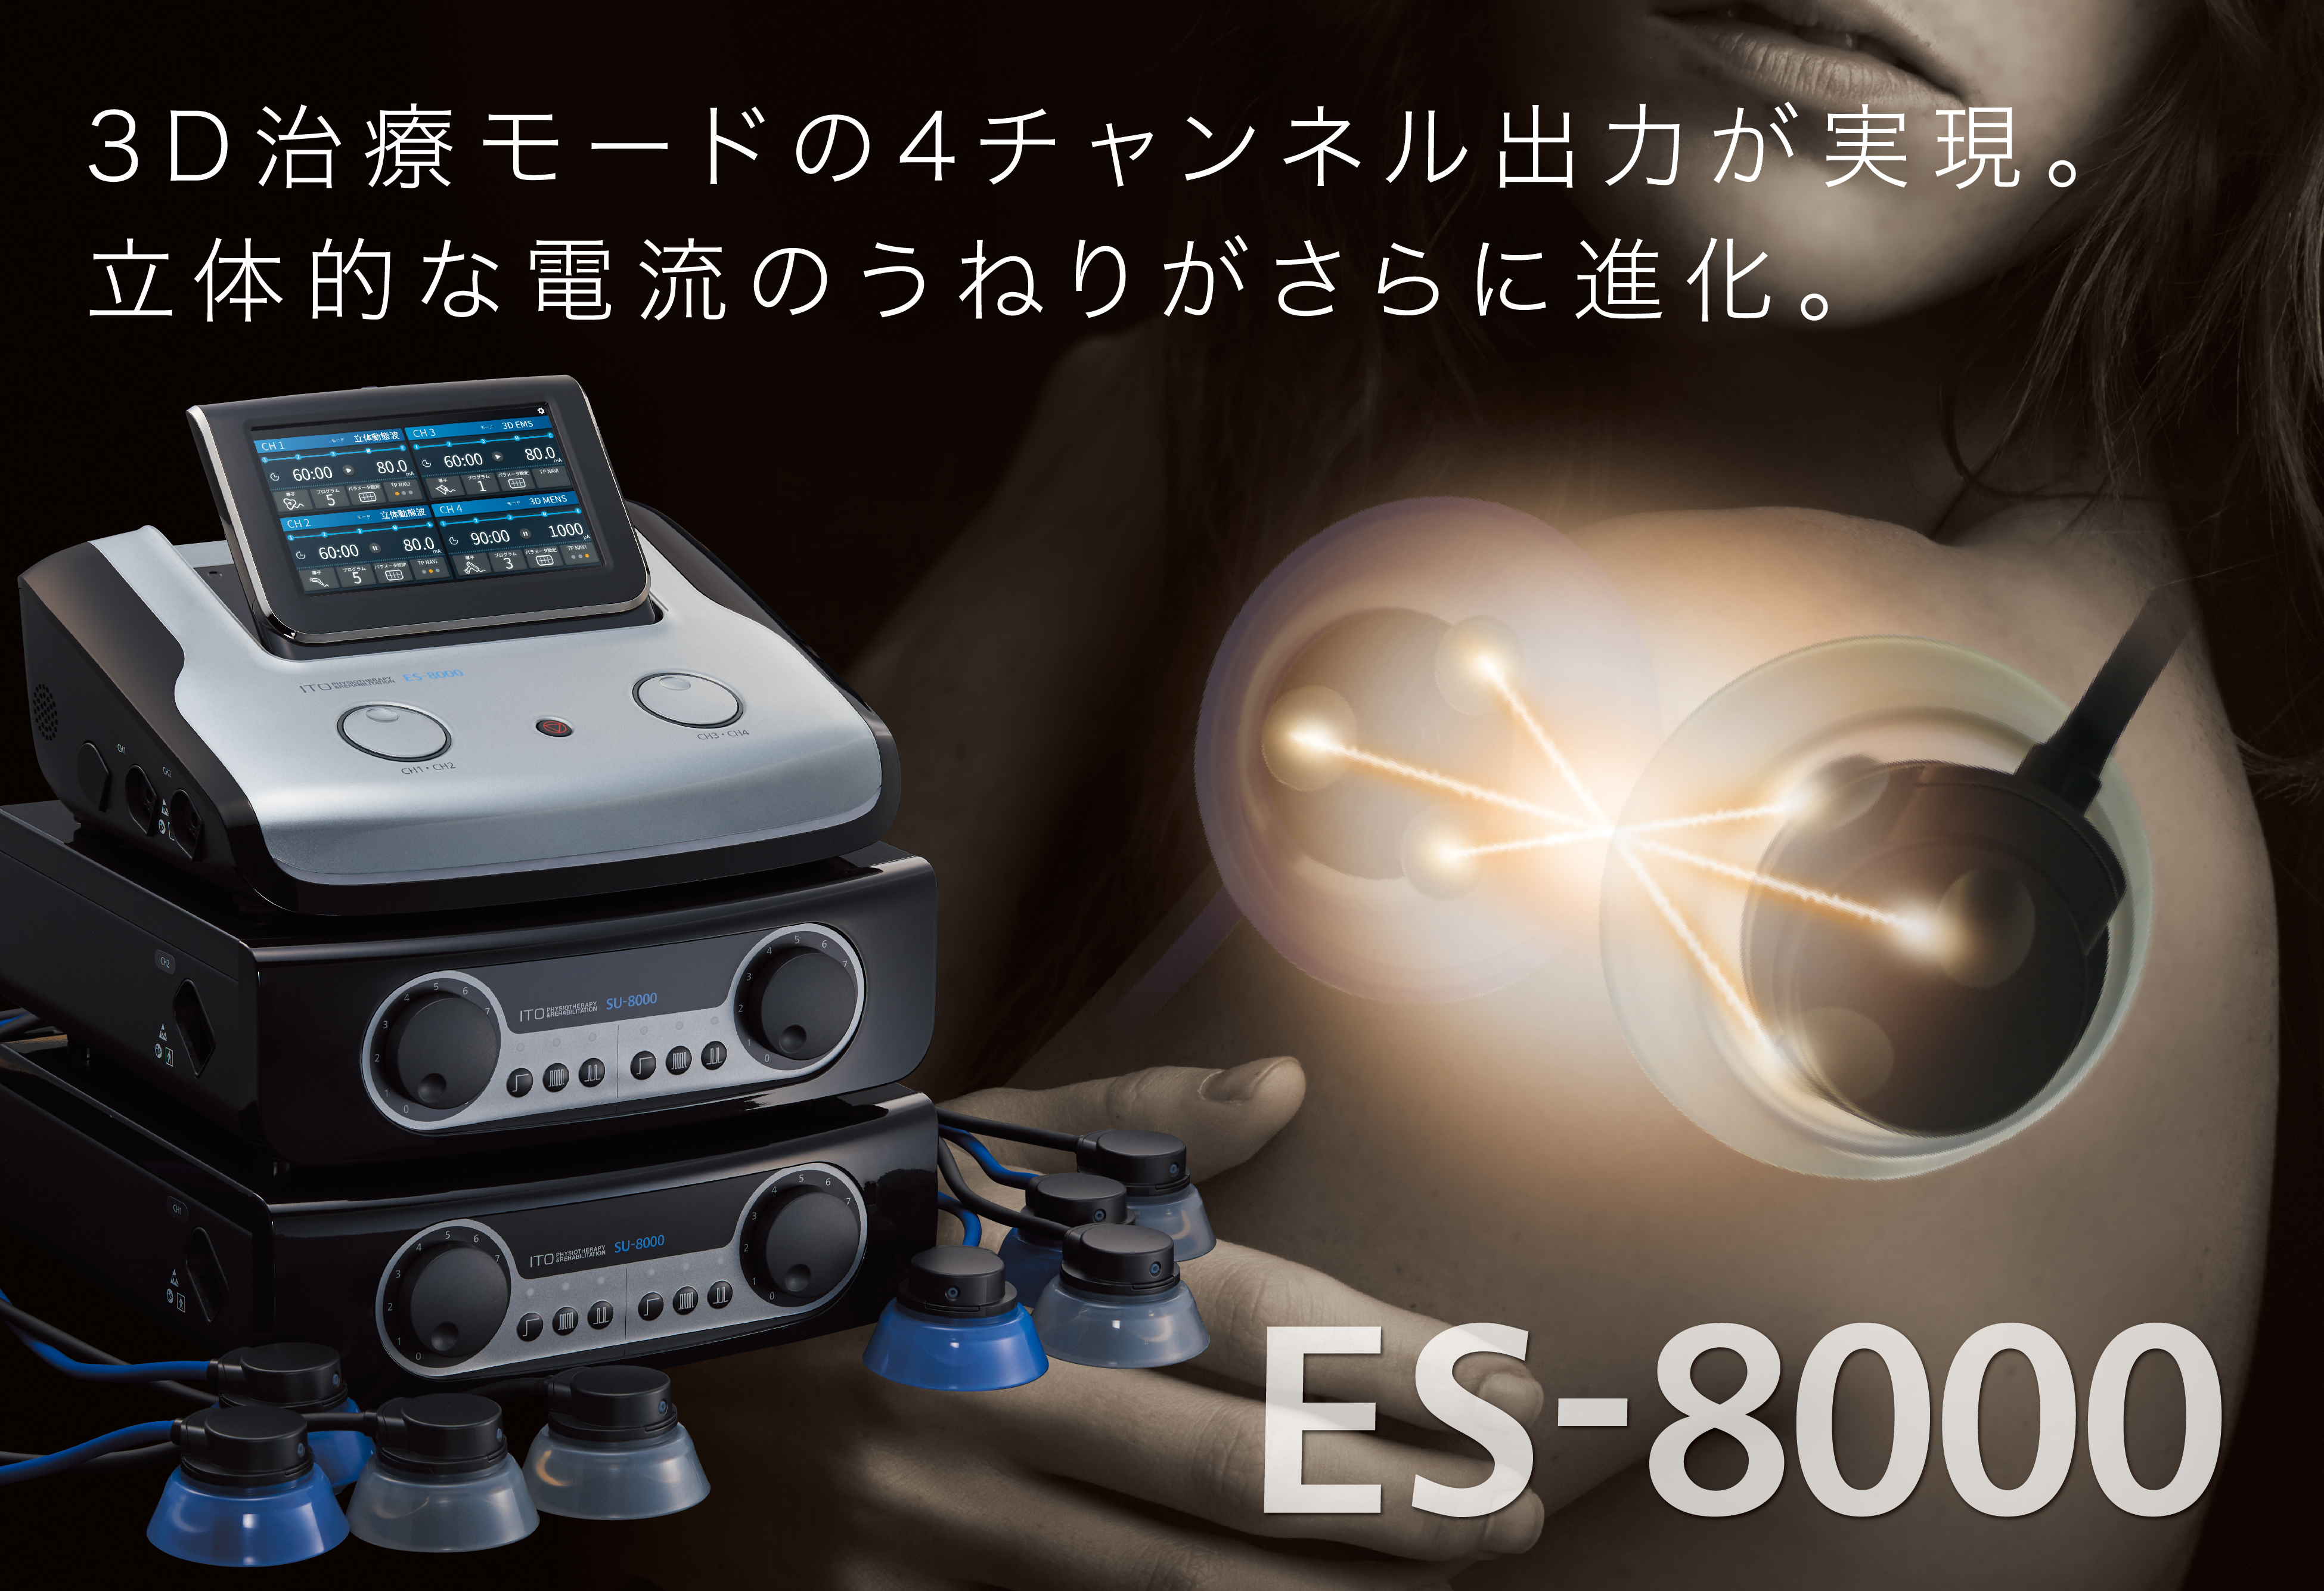 伊藤超短波、ESシリーズの最新機種となる干渉電流型低周波治療器 